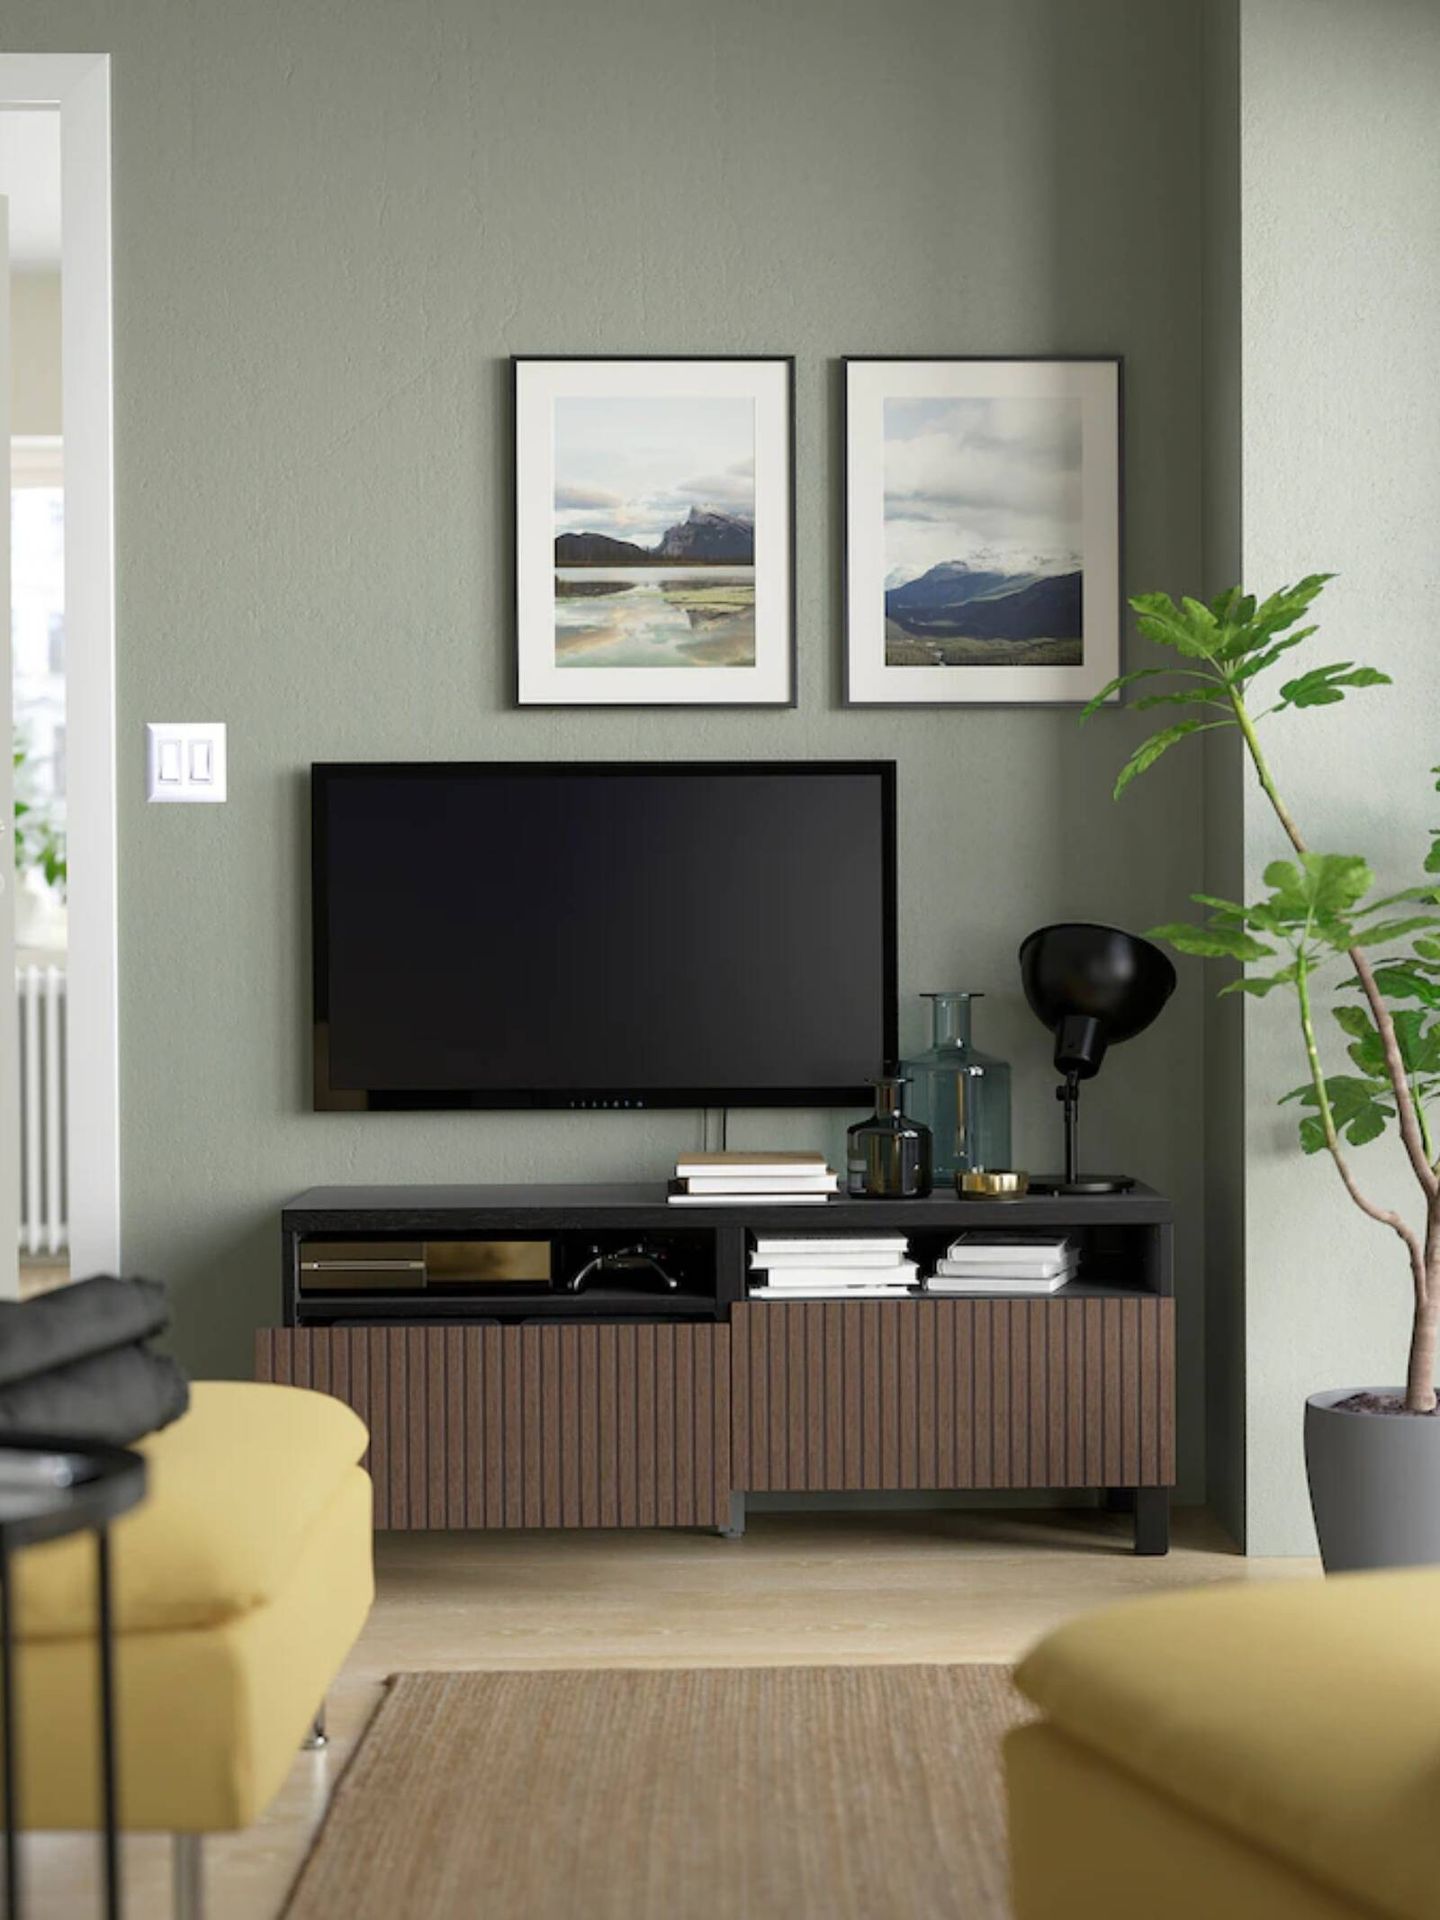 El nuevo mueble de Ikea para organizar tu salón y ganar espacio. (Cortesía)